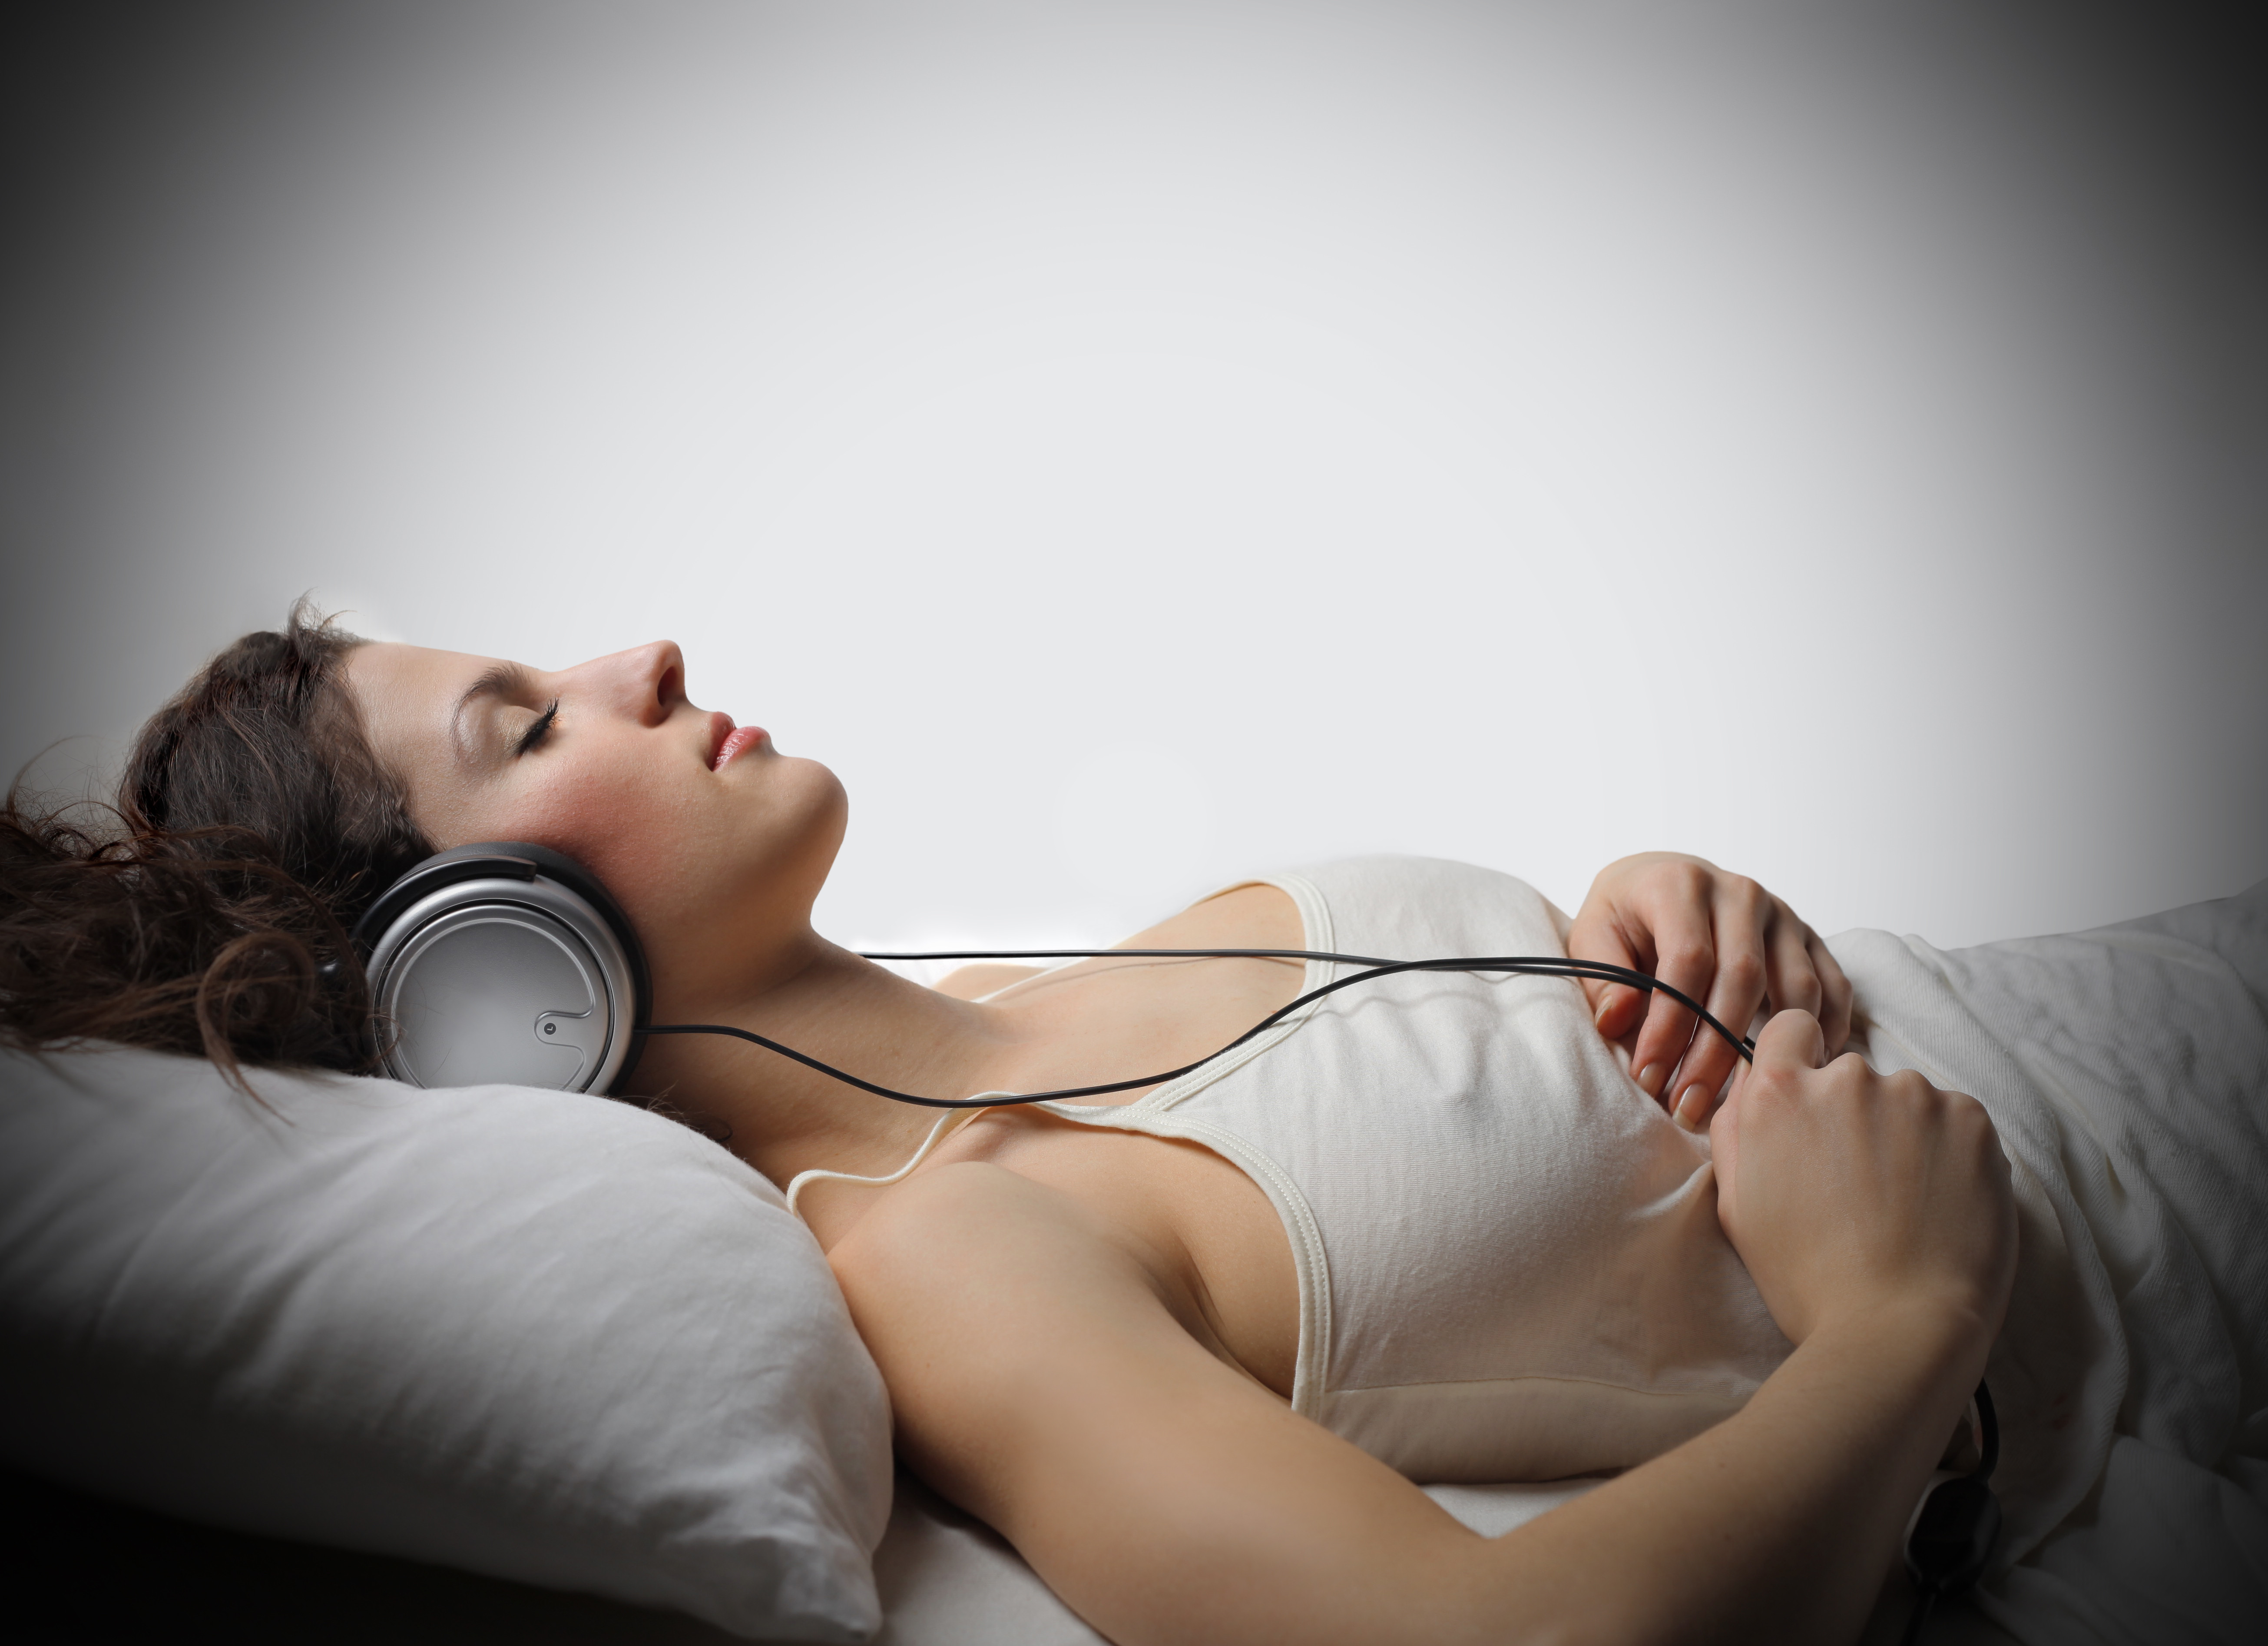 Музыка для снятия депрессии. Медитация в наушниках. Девушка в наушниках отдыхает. Музыкотерапия во сне.